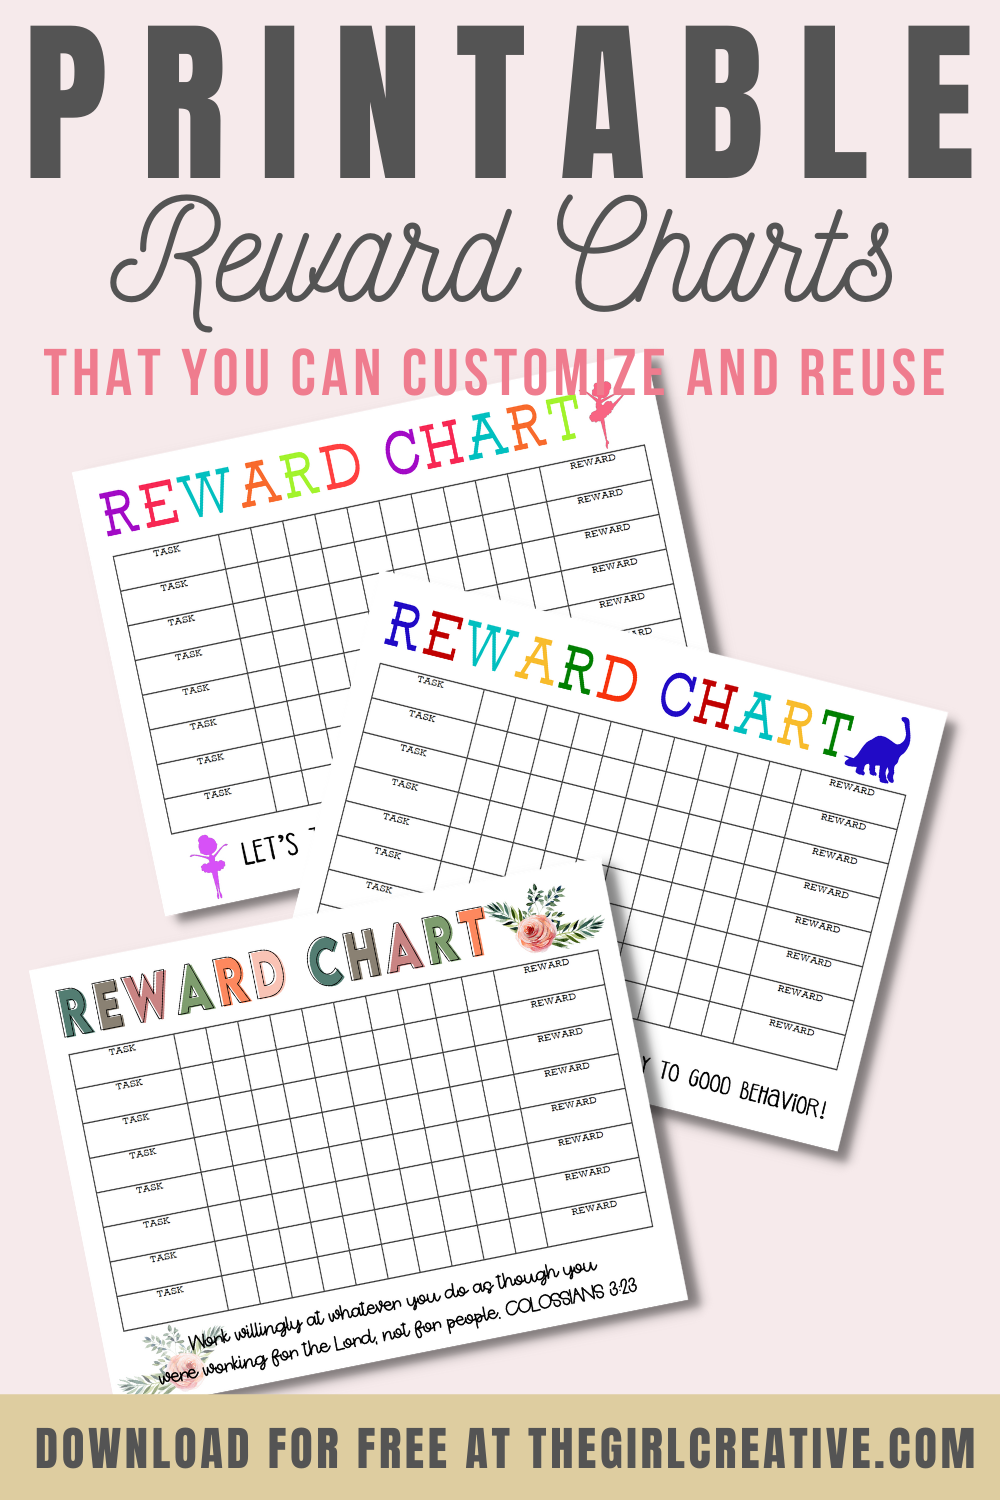 Reward charts